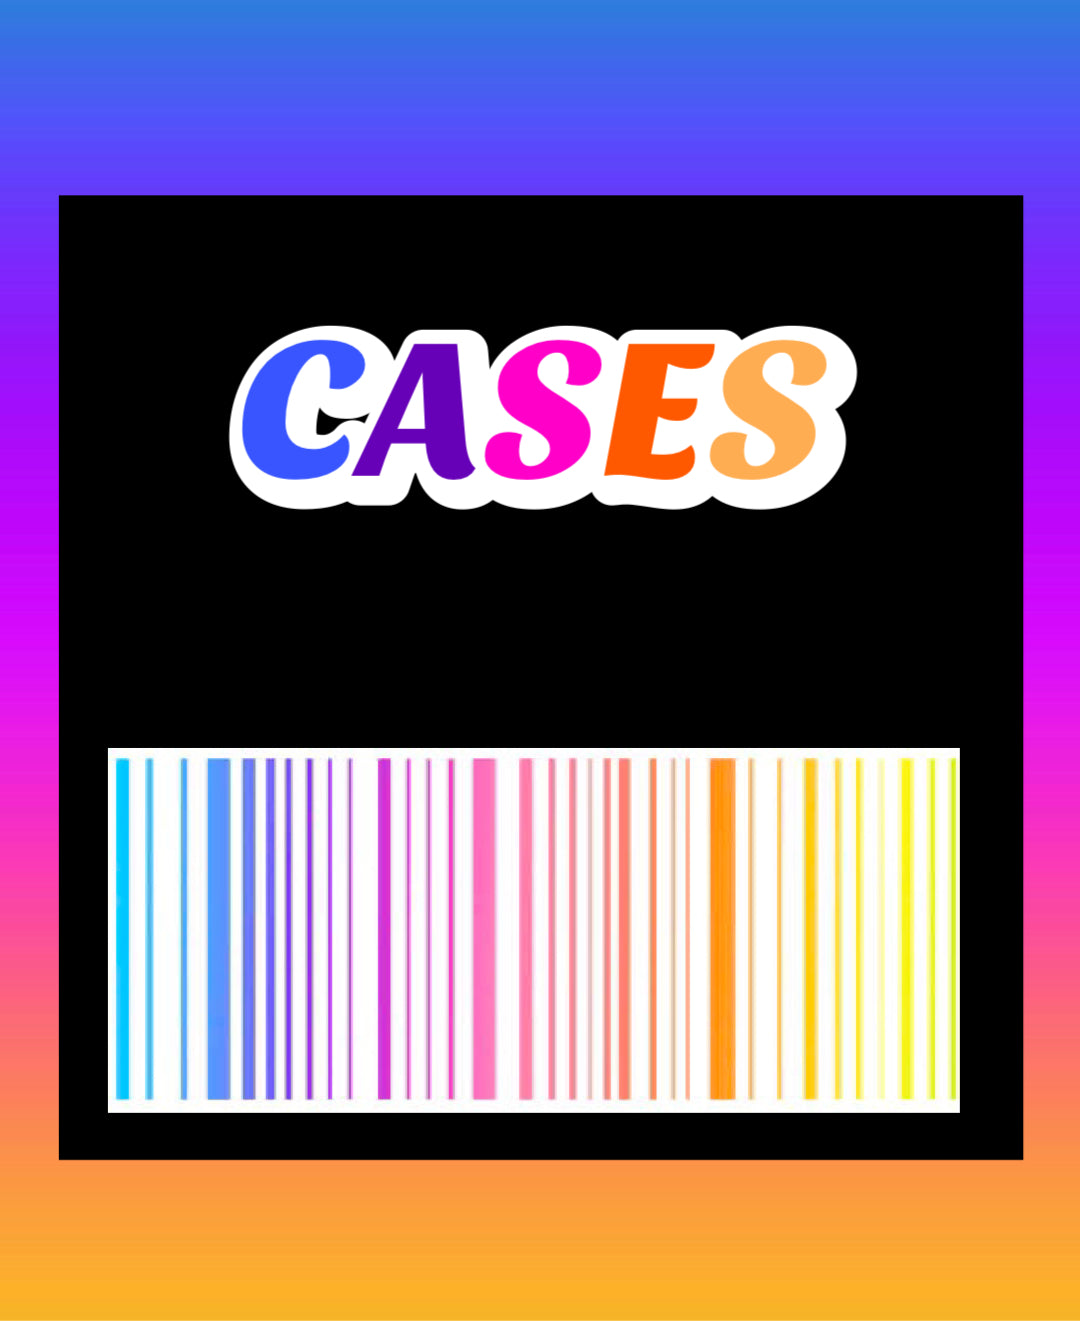 CASES